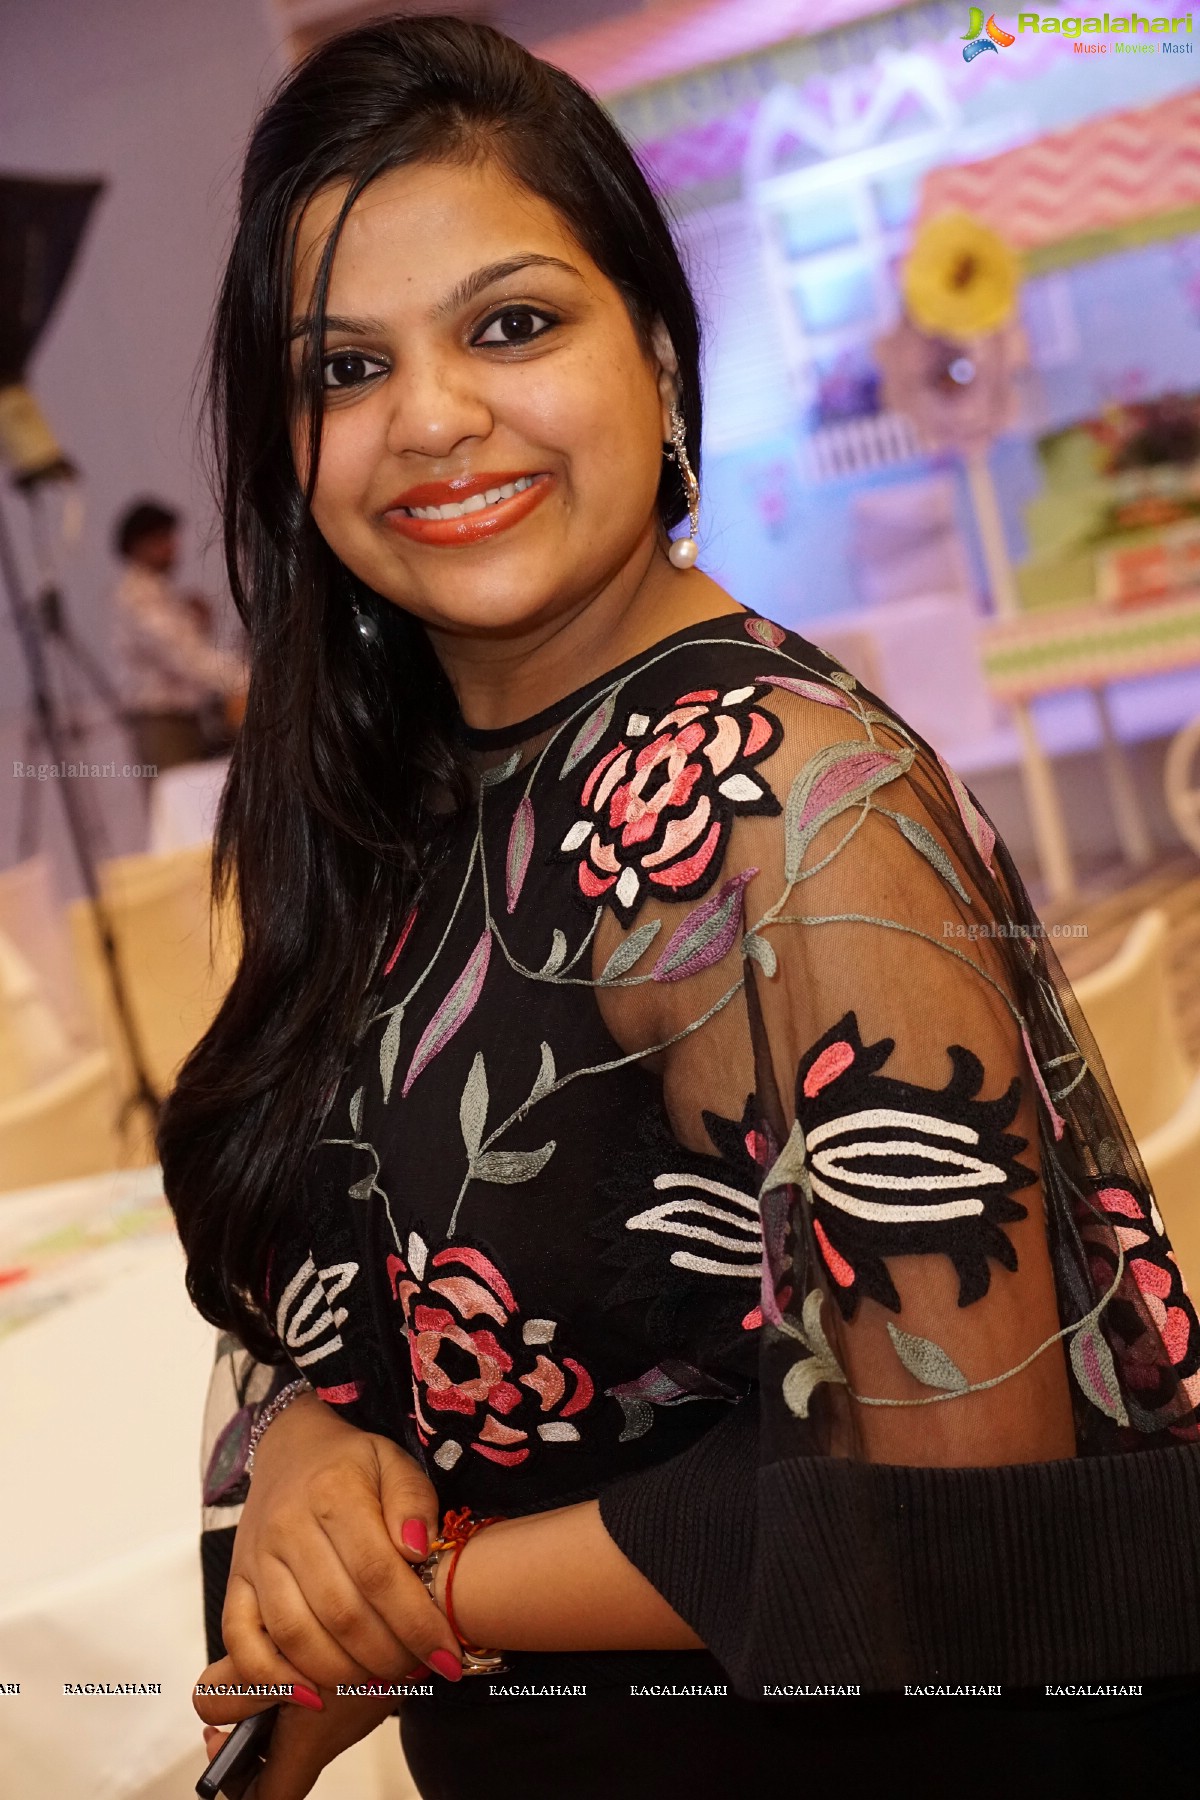 Baby Tisha's 1st Birthday Celebrations at Hotel Trident, Hyderabad